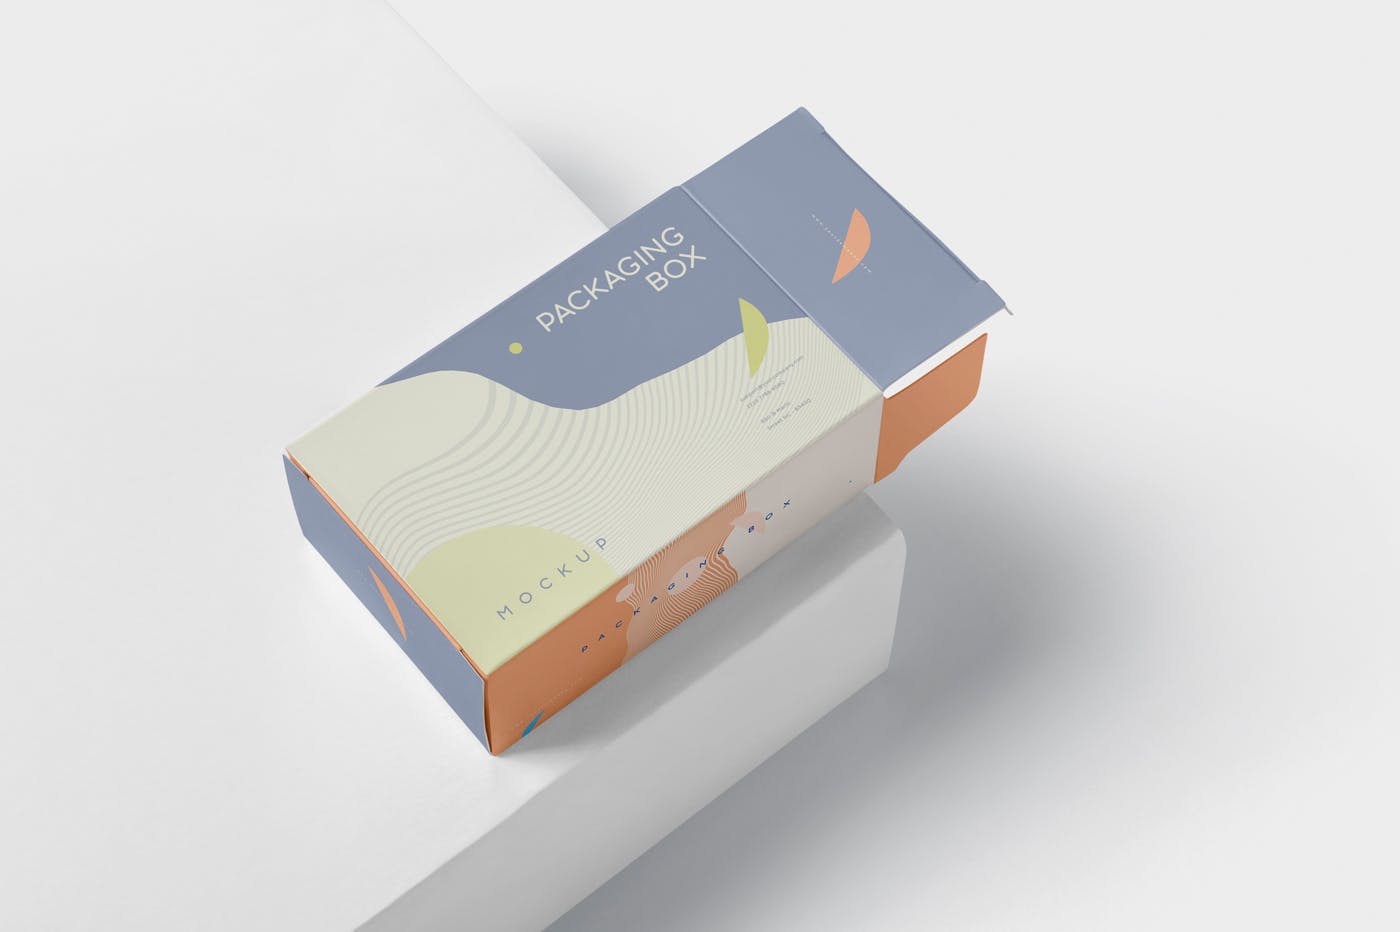 扁平矩形产品包装盒效果图大洋岛精选 Package Box Mockup – Slim Rectangle Shape插图3